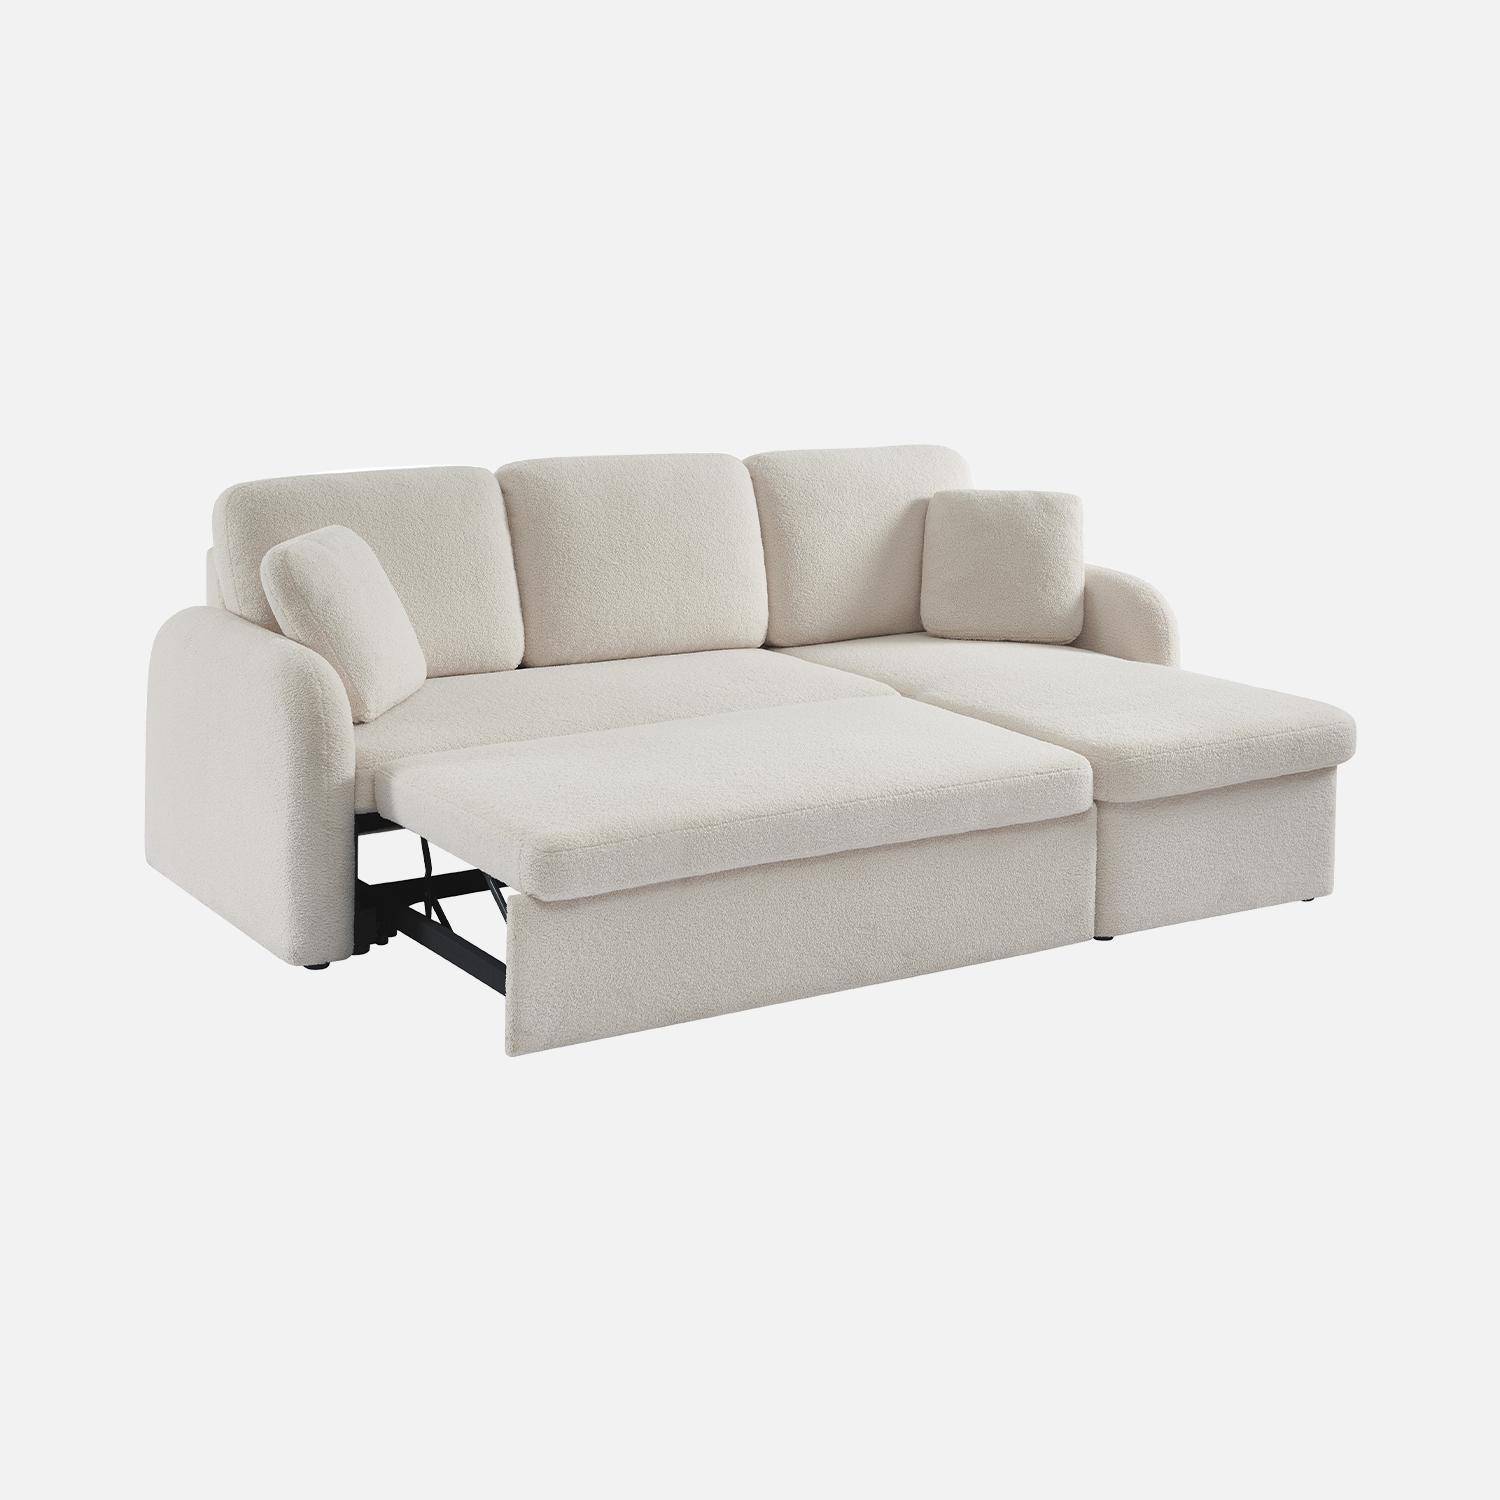 Sofá cama esquinero de 3 plazas en tejido borreguito blanco, sillón esquinero reversible, caja de almacenaje, Milano,sweeek,Photo7